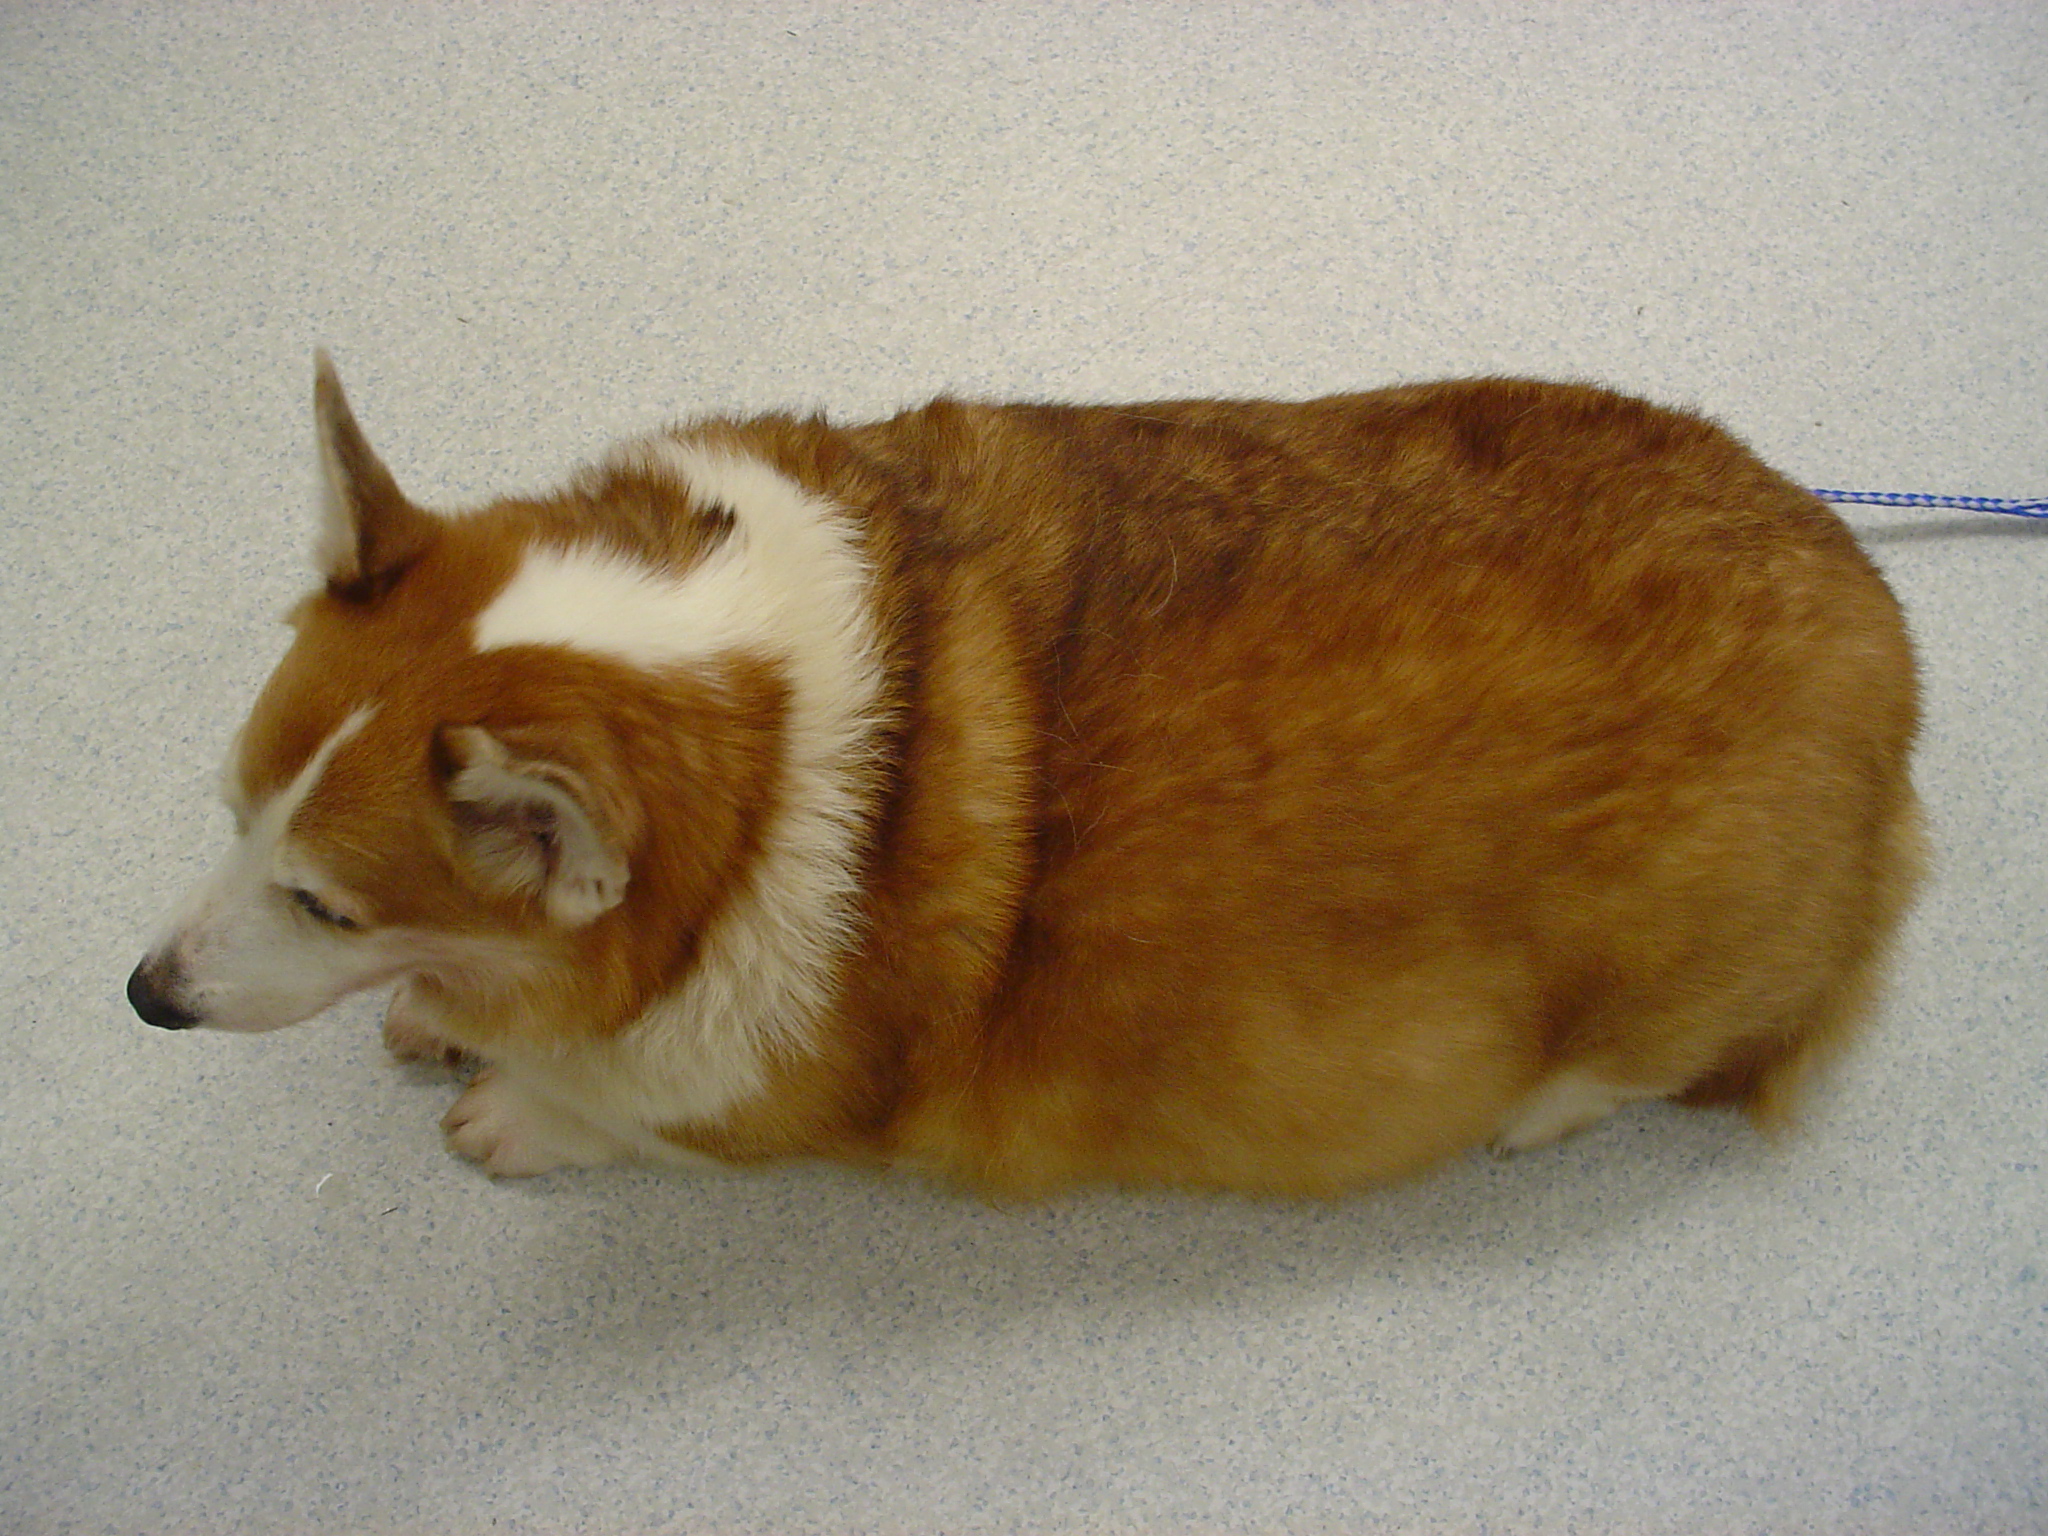 An overweight Corgi